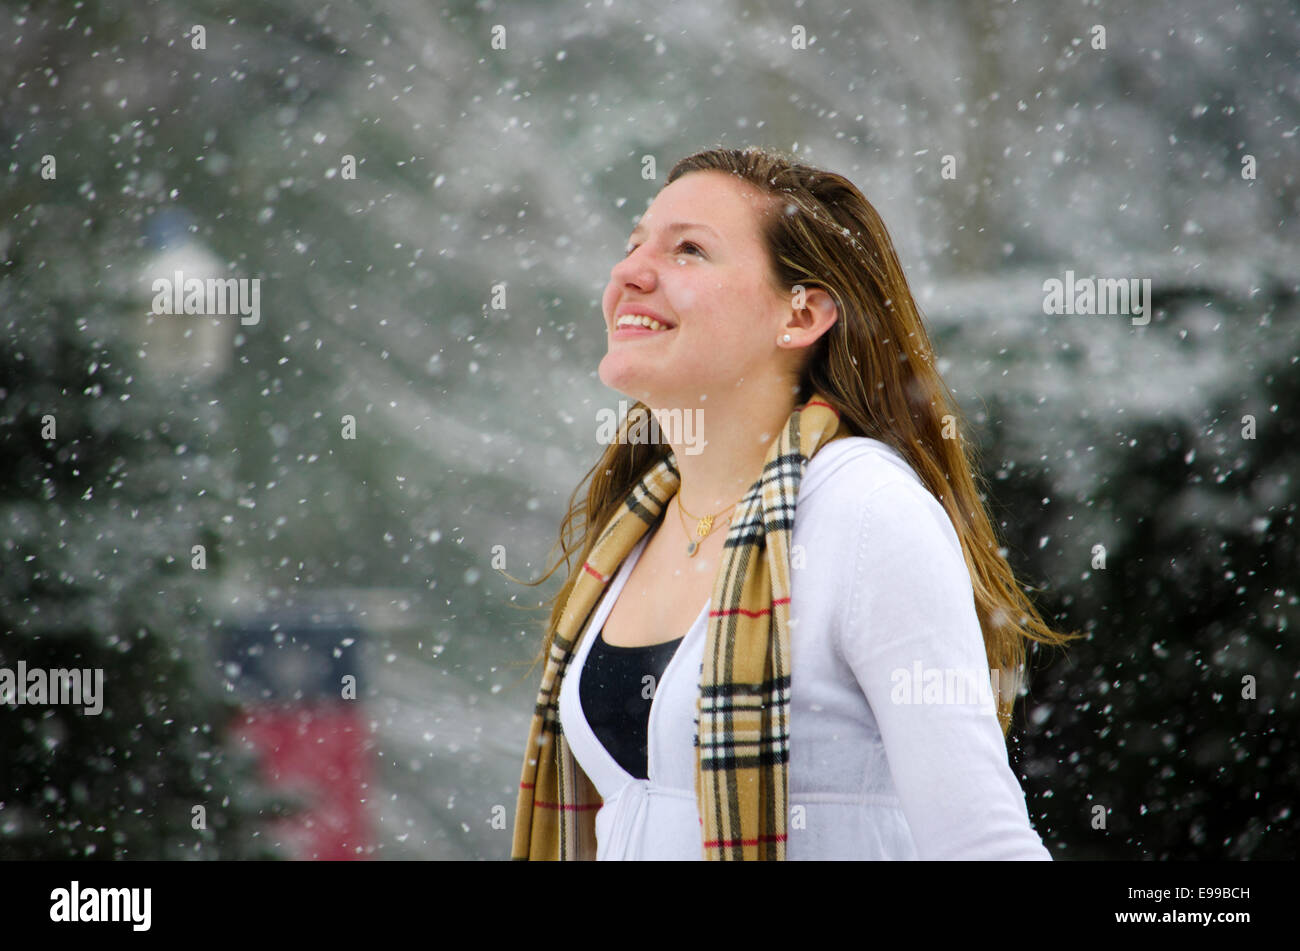 Let it Snow : Une jeune femme relève la tête jusqu'à une belle averse de neige. Banque D'Images